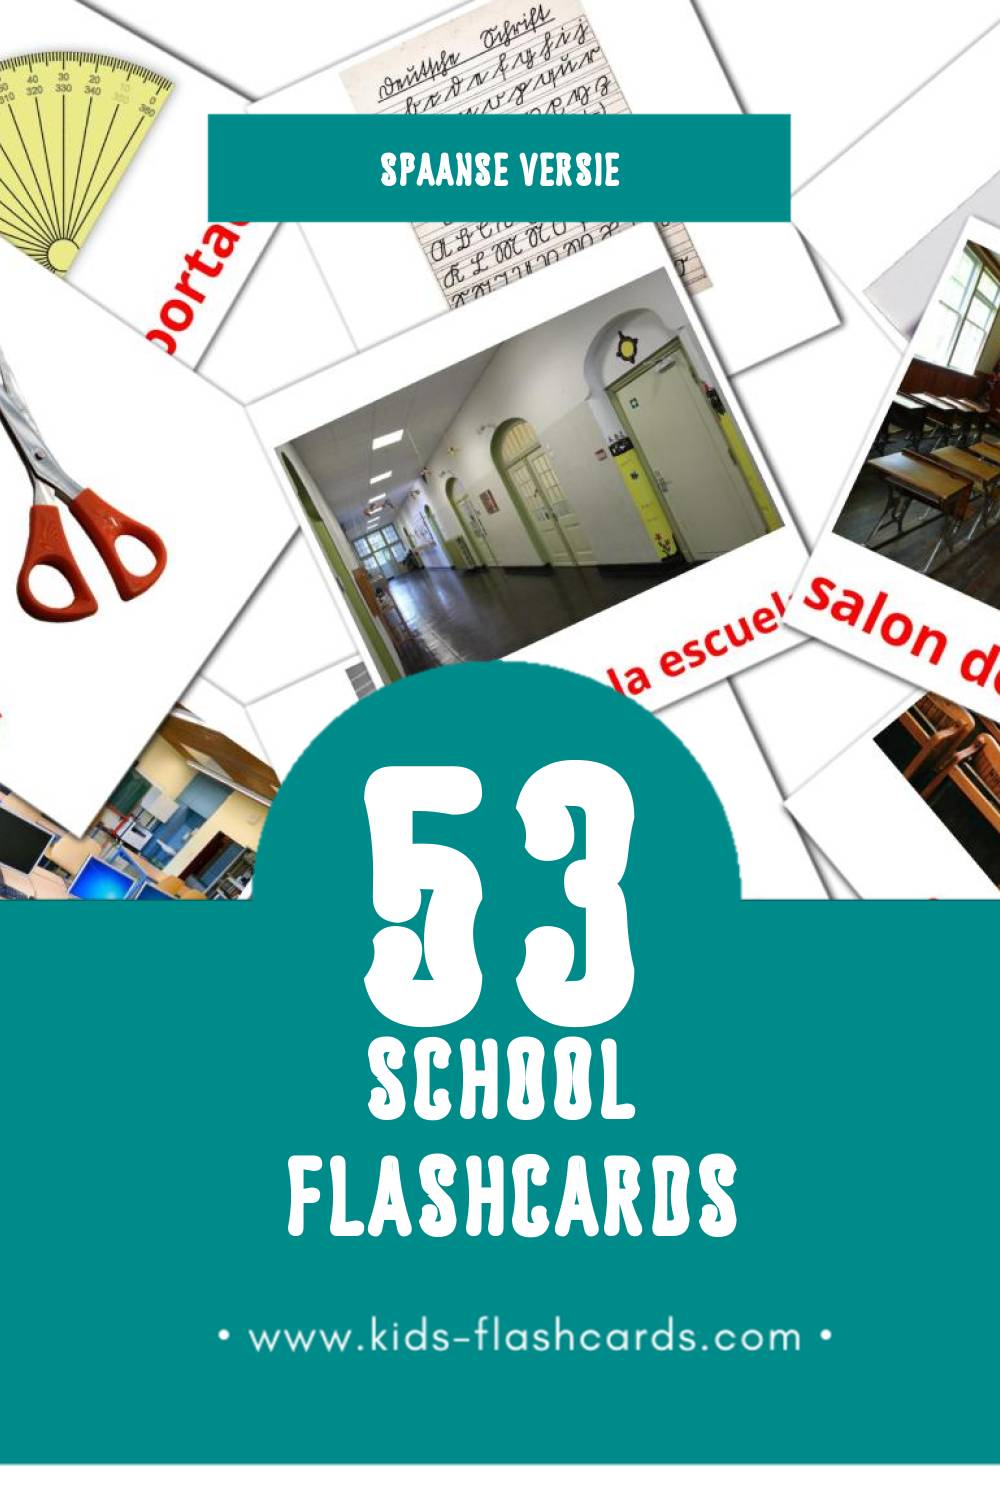 Visuele Escuela Flashcards voor Kleuters (53 kaarten in het Spaans)